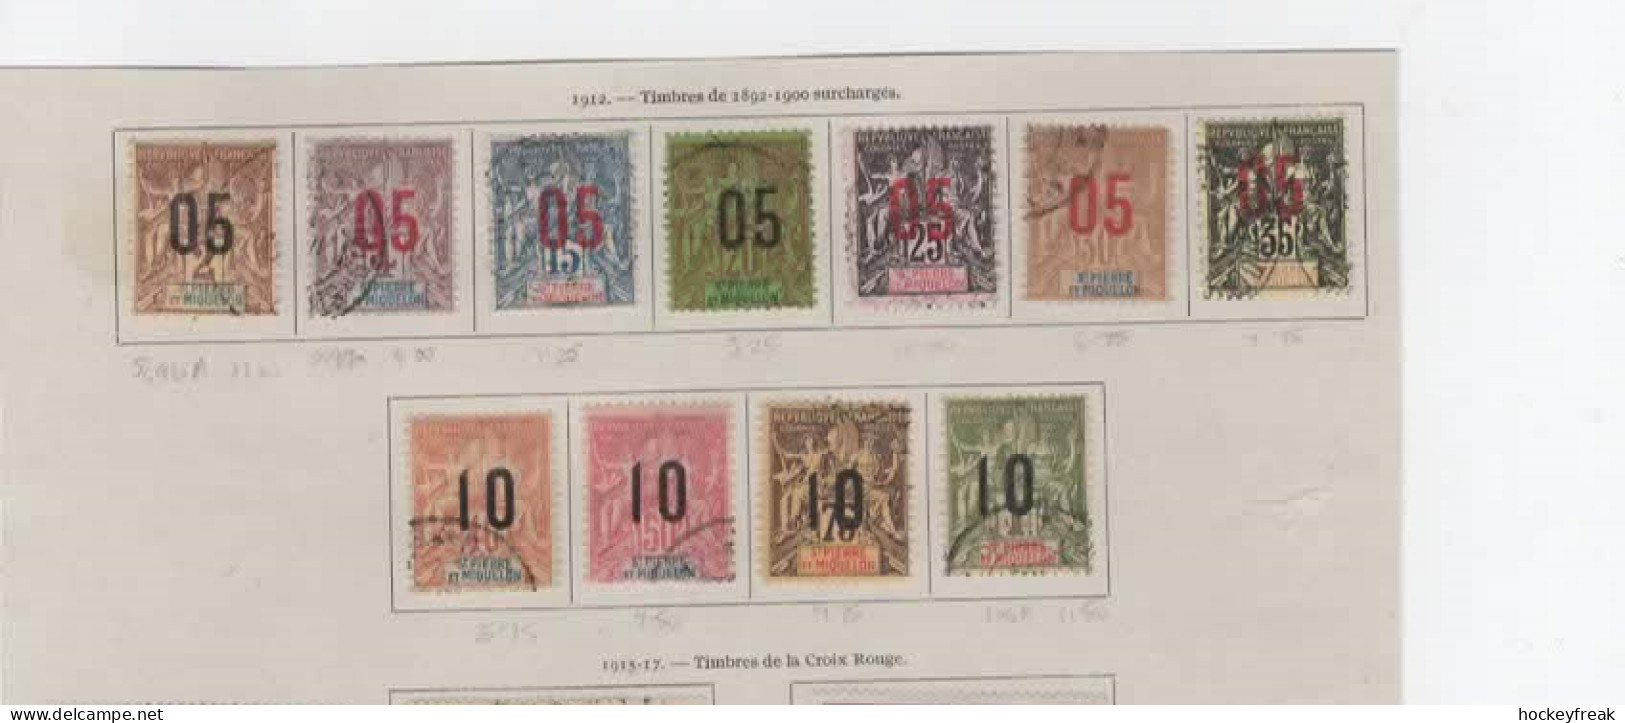 St Pierre Et Miquelon 1912 -  Set Complete SG96A-106A - VFU Cat £80 SG2015 - Used Stamps